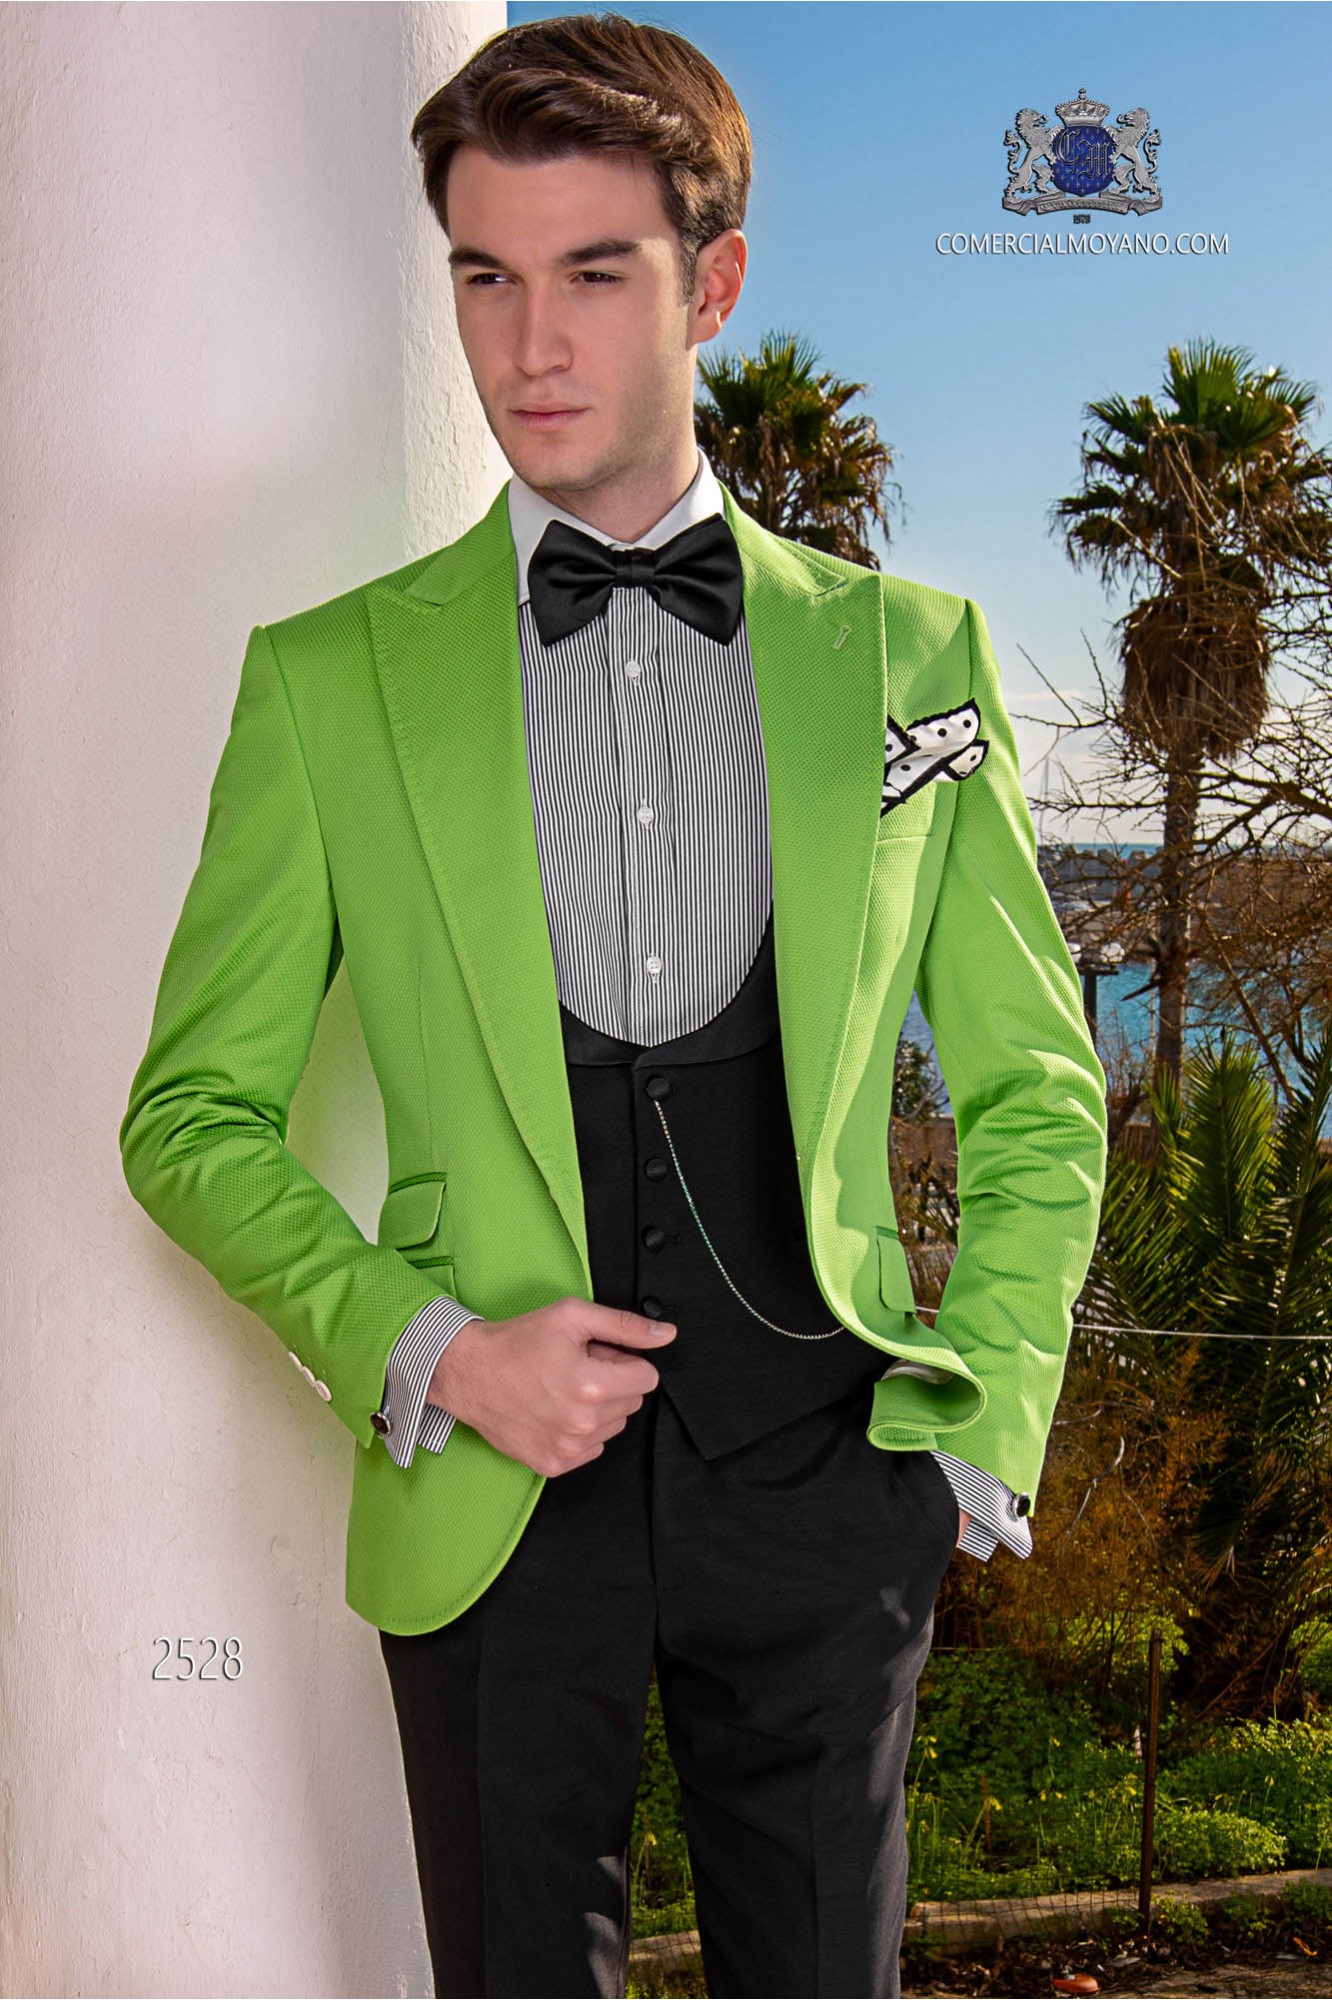 Traje de novio italiano a medida verde de algodón tejido microdiseño modelo: 2528 Mario Moyano colección Hipster